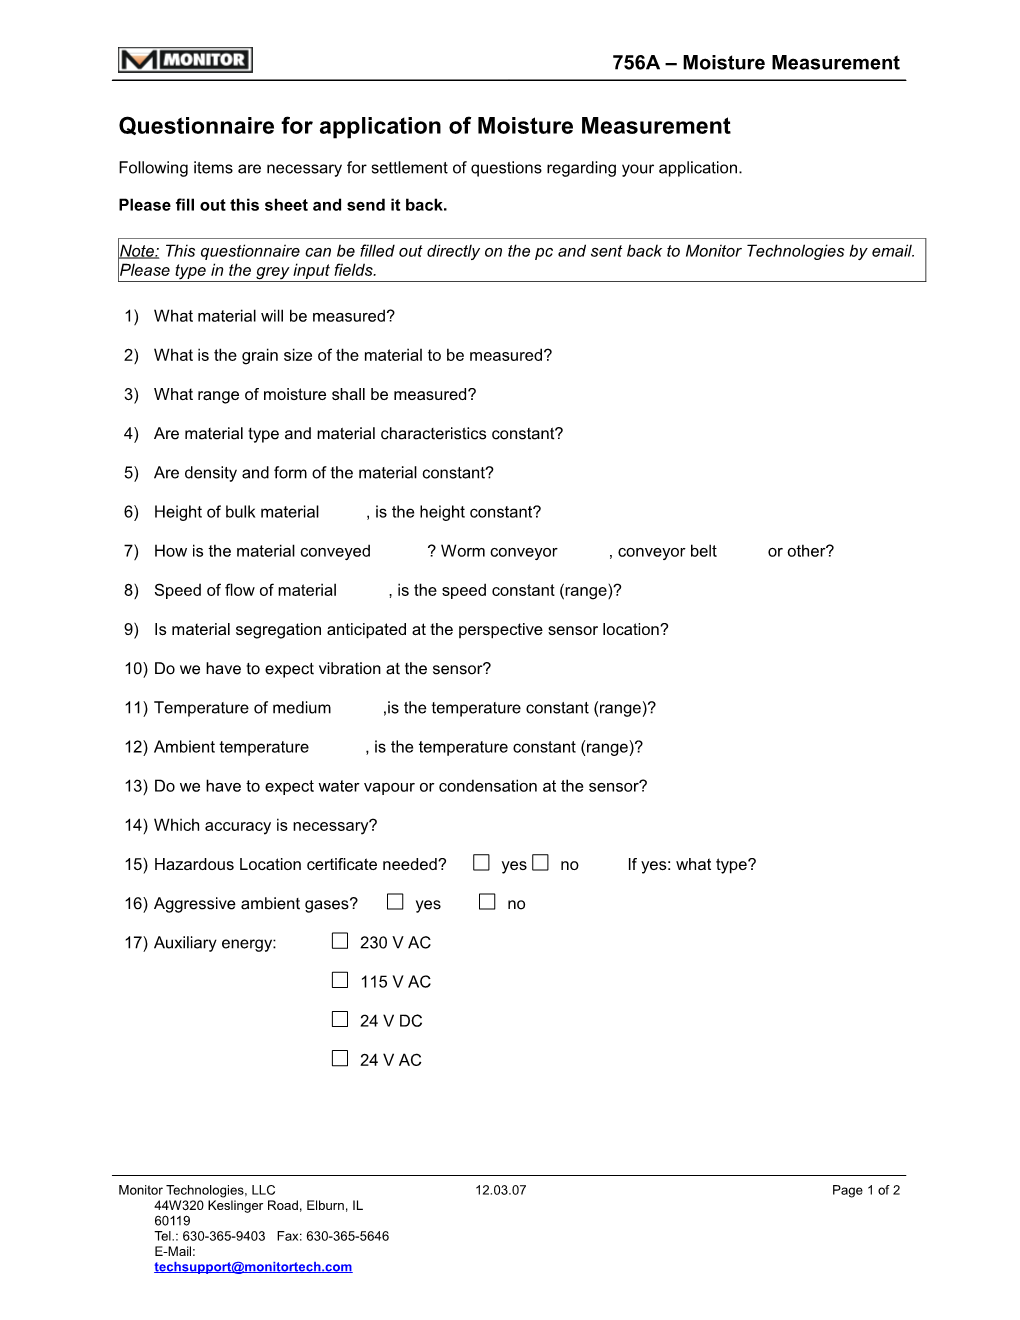 Questionnaire for Application of Moisture Measurement